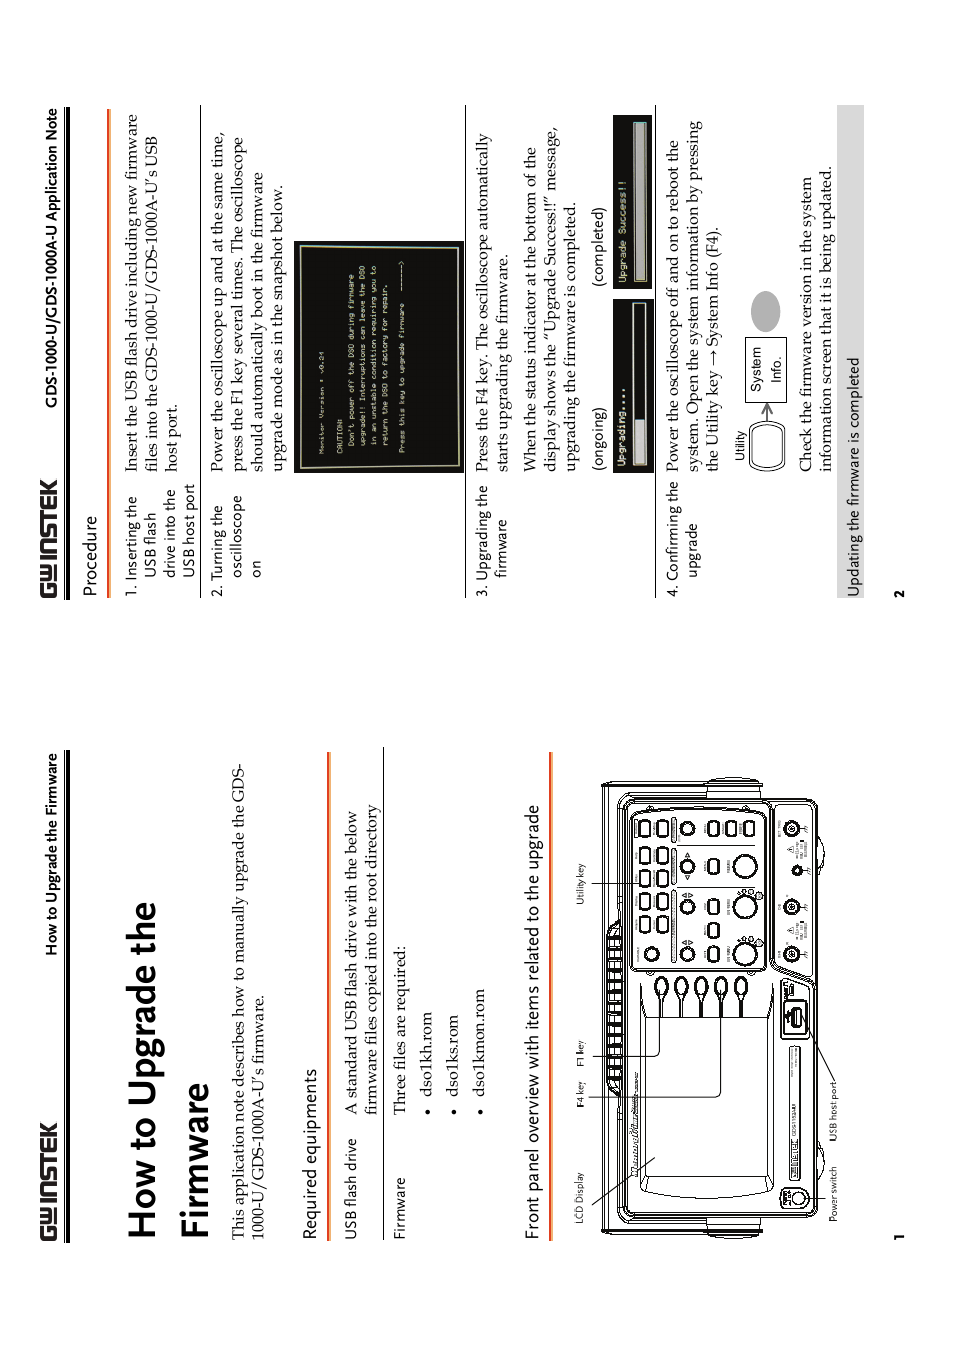 GDS-1000A-U Series firmware upgrade guide